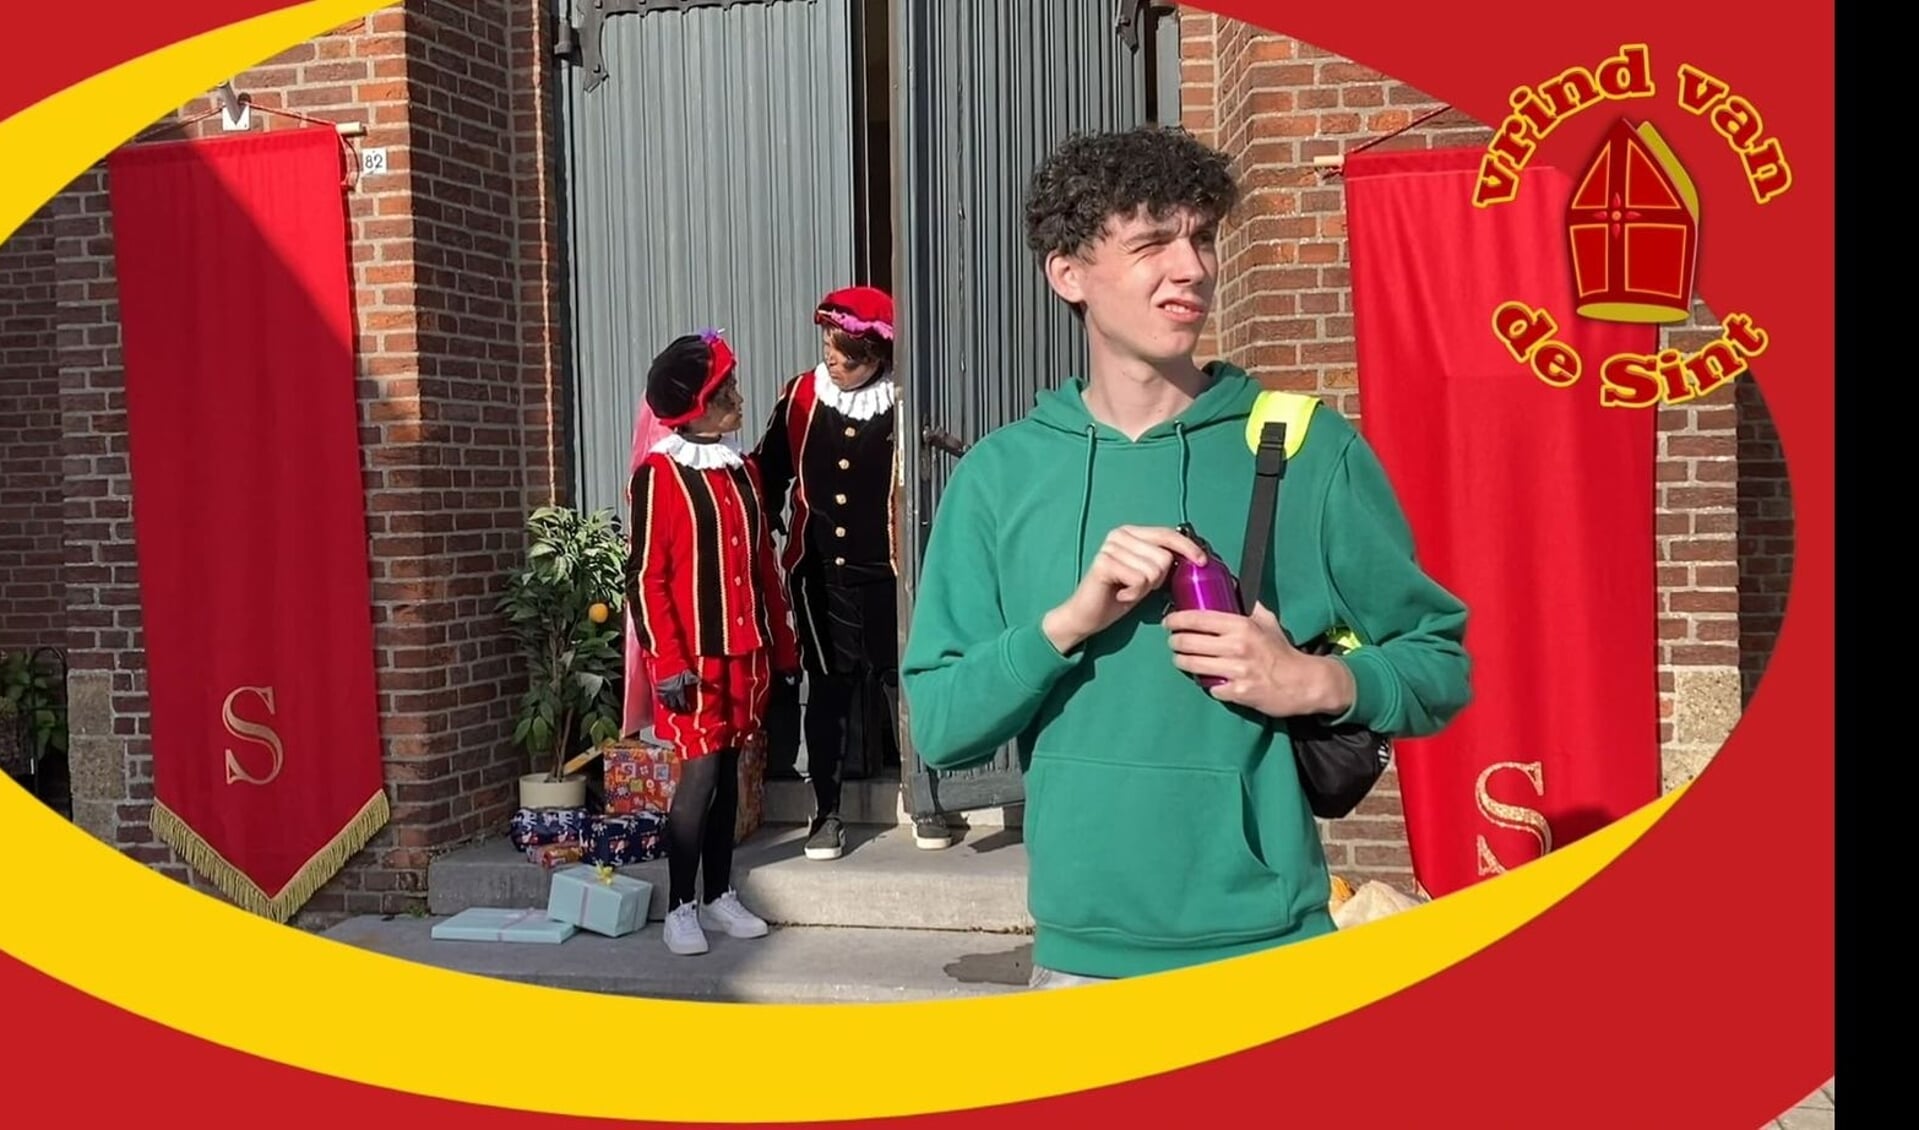 Scène uit de Sinterklaas-serie De Witte Piet.